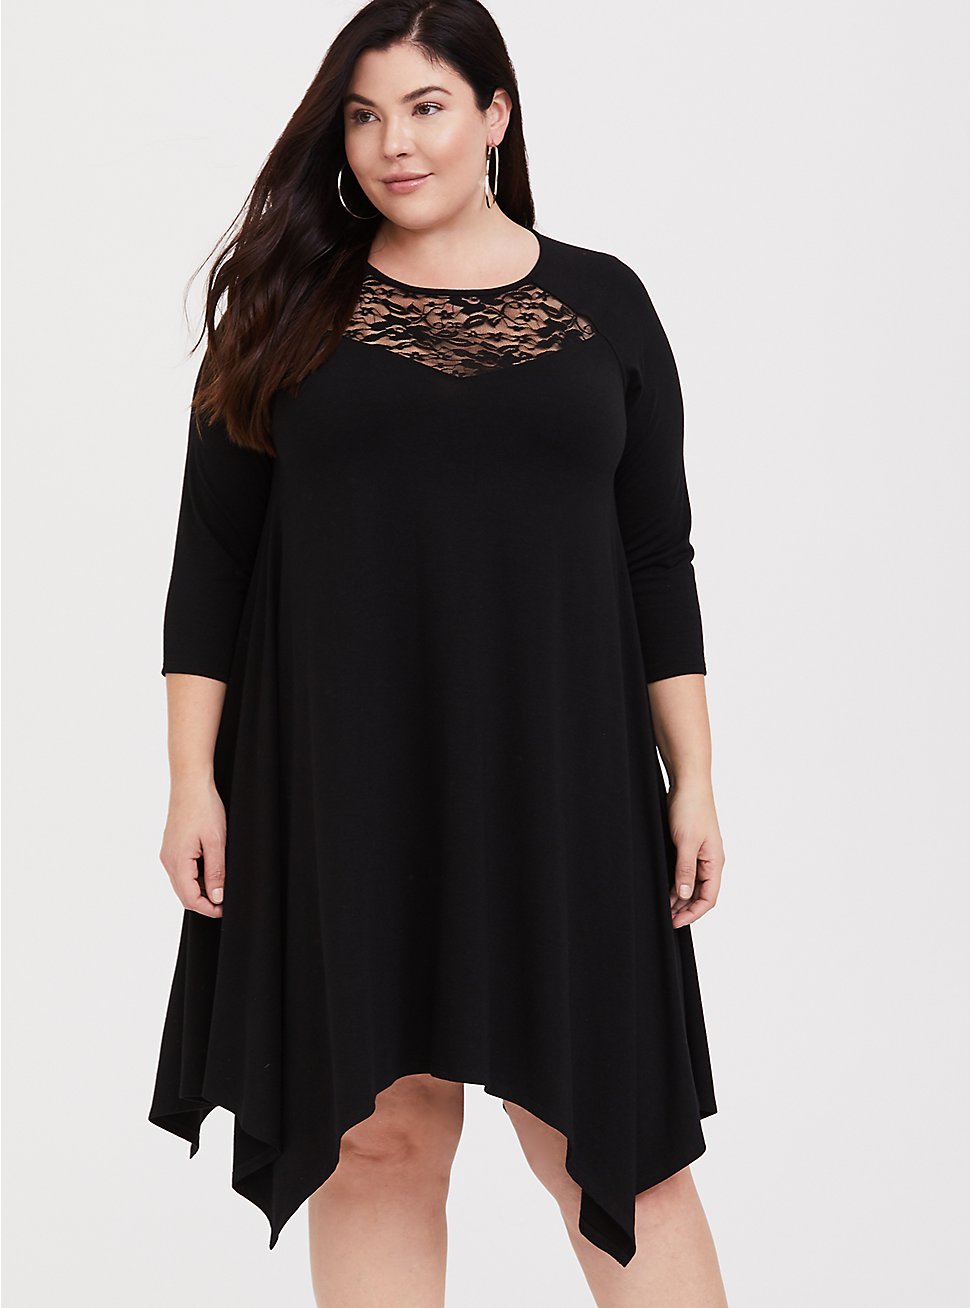 Plus Size - Black Lace Yoke Trapeze Dress - Torrid